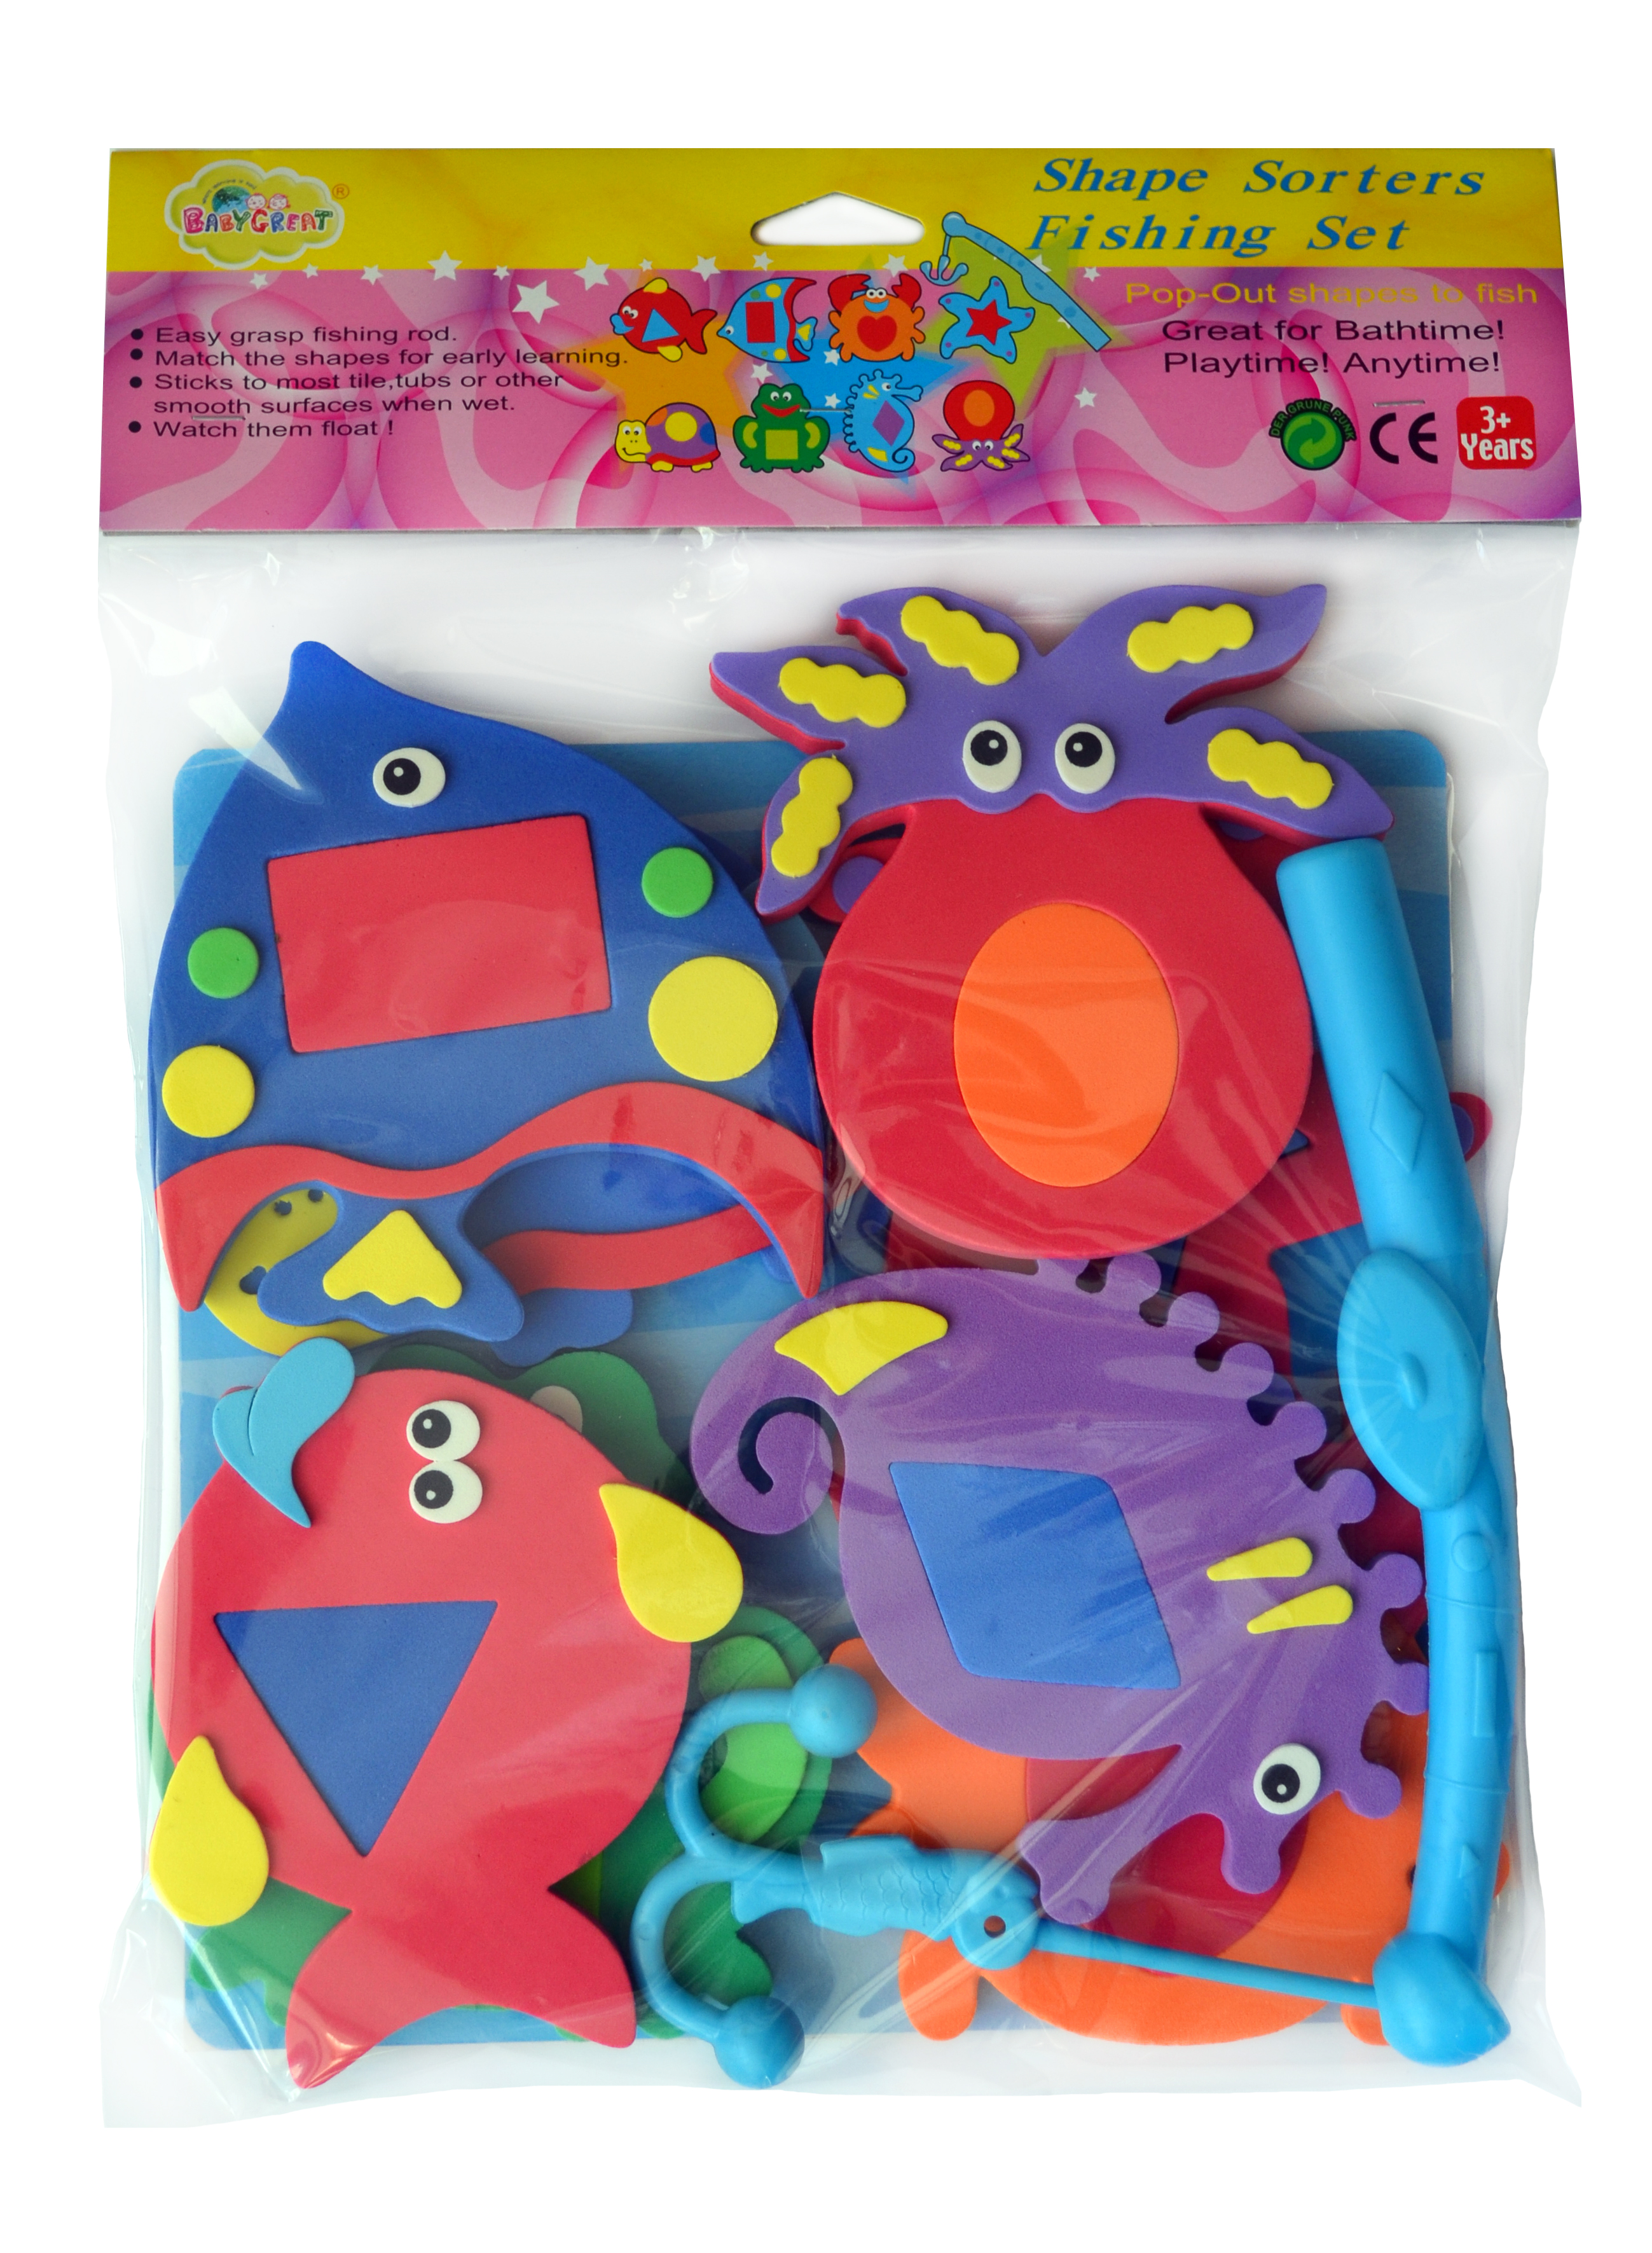 Аква-пазлы Baby Great Морские жители и фигуры, 9 игрушек (GB-7624) - фото 1